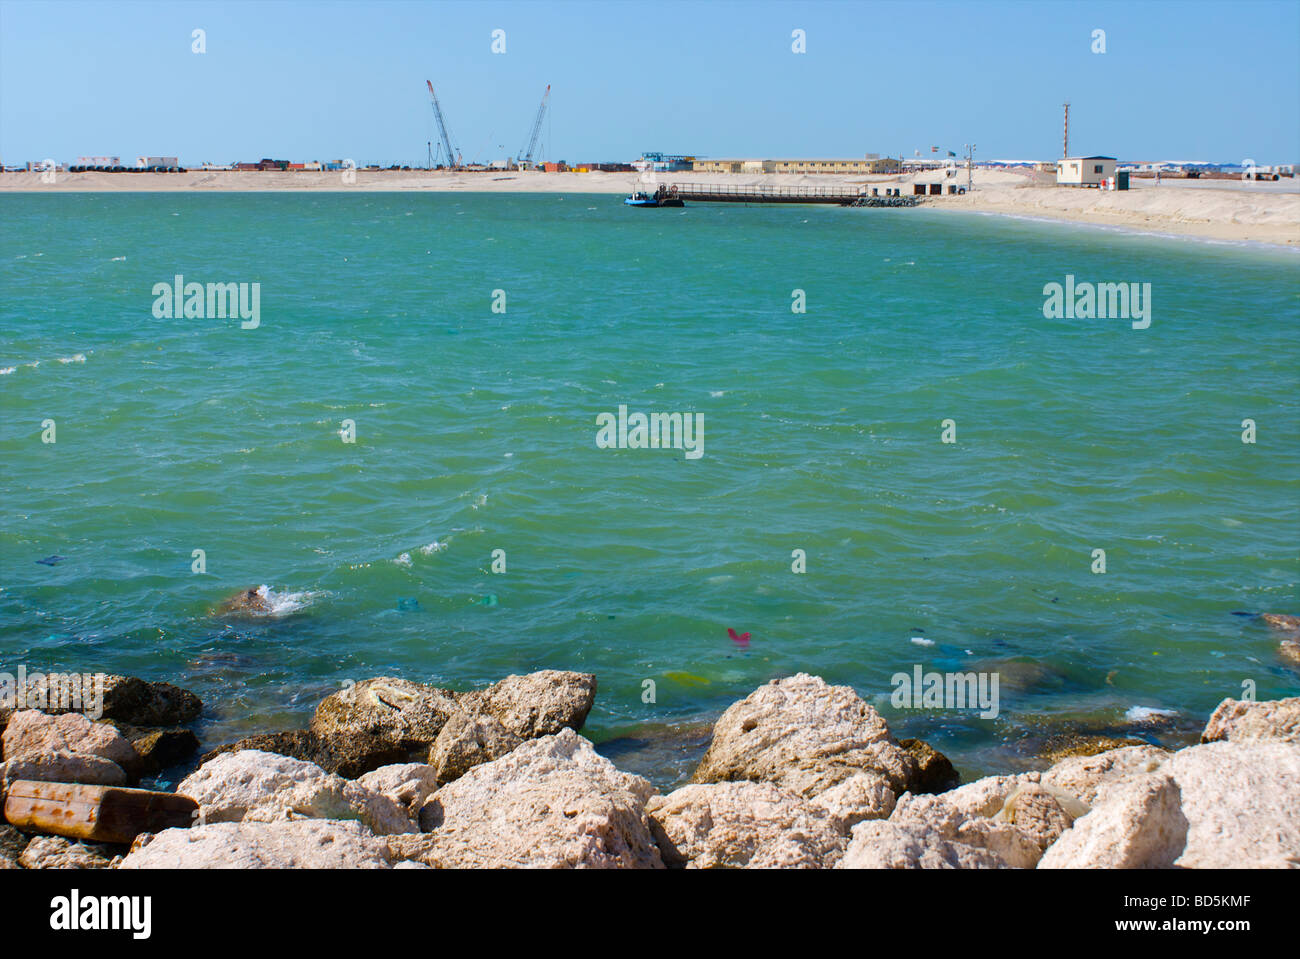 Deira Corniche and Palm Deira construction site, Dubai, United Arab Emirates (UAE). See description for more information. Stock Photo